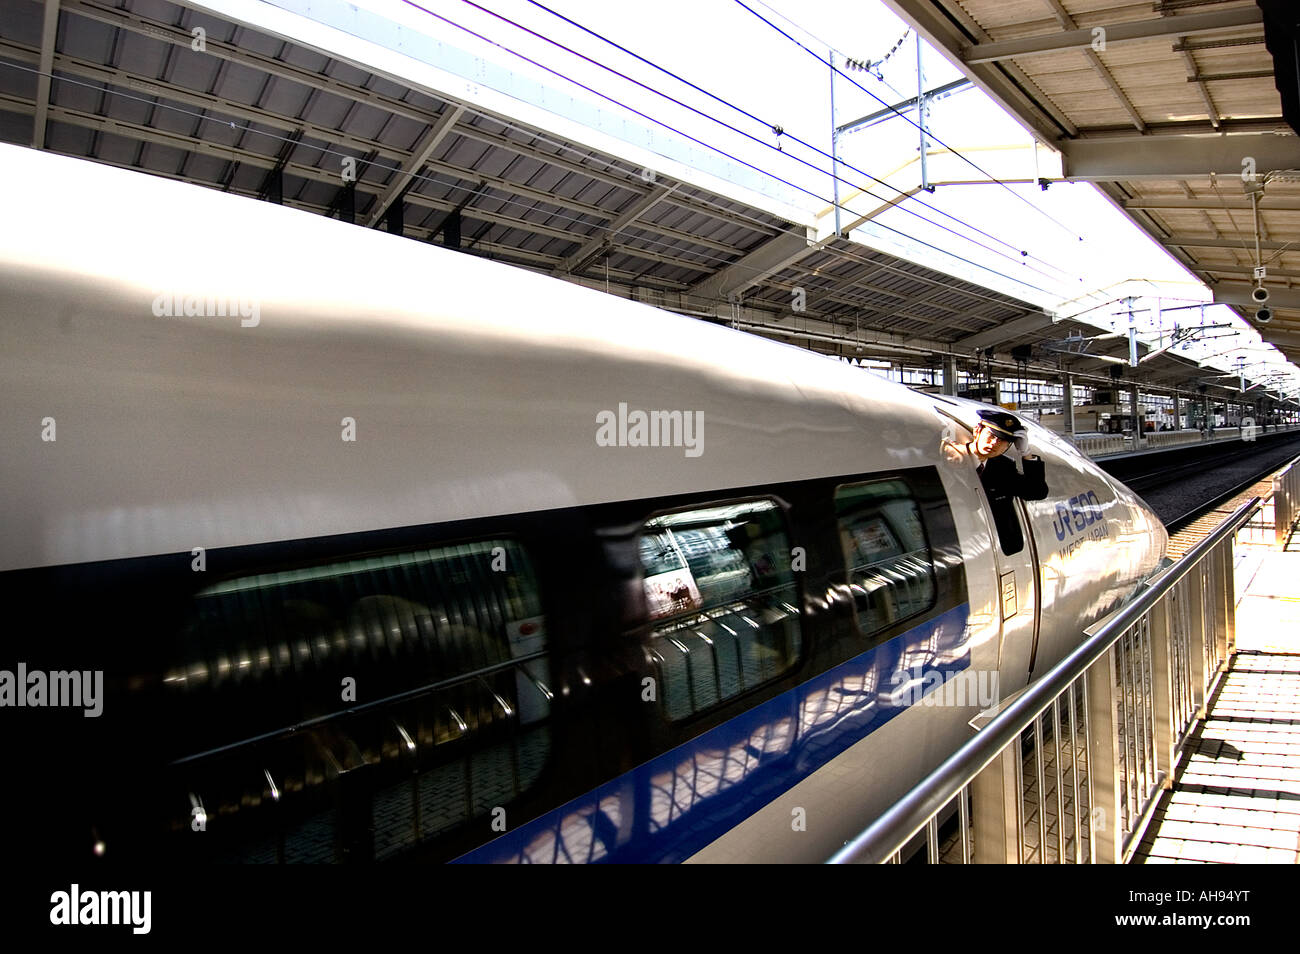 Tokyo train il trasporto ferroviario bullet train veloce ed efficiente servizio di giapponese Foto Stock